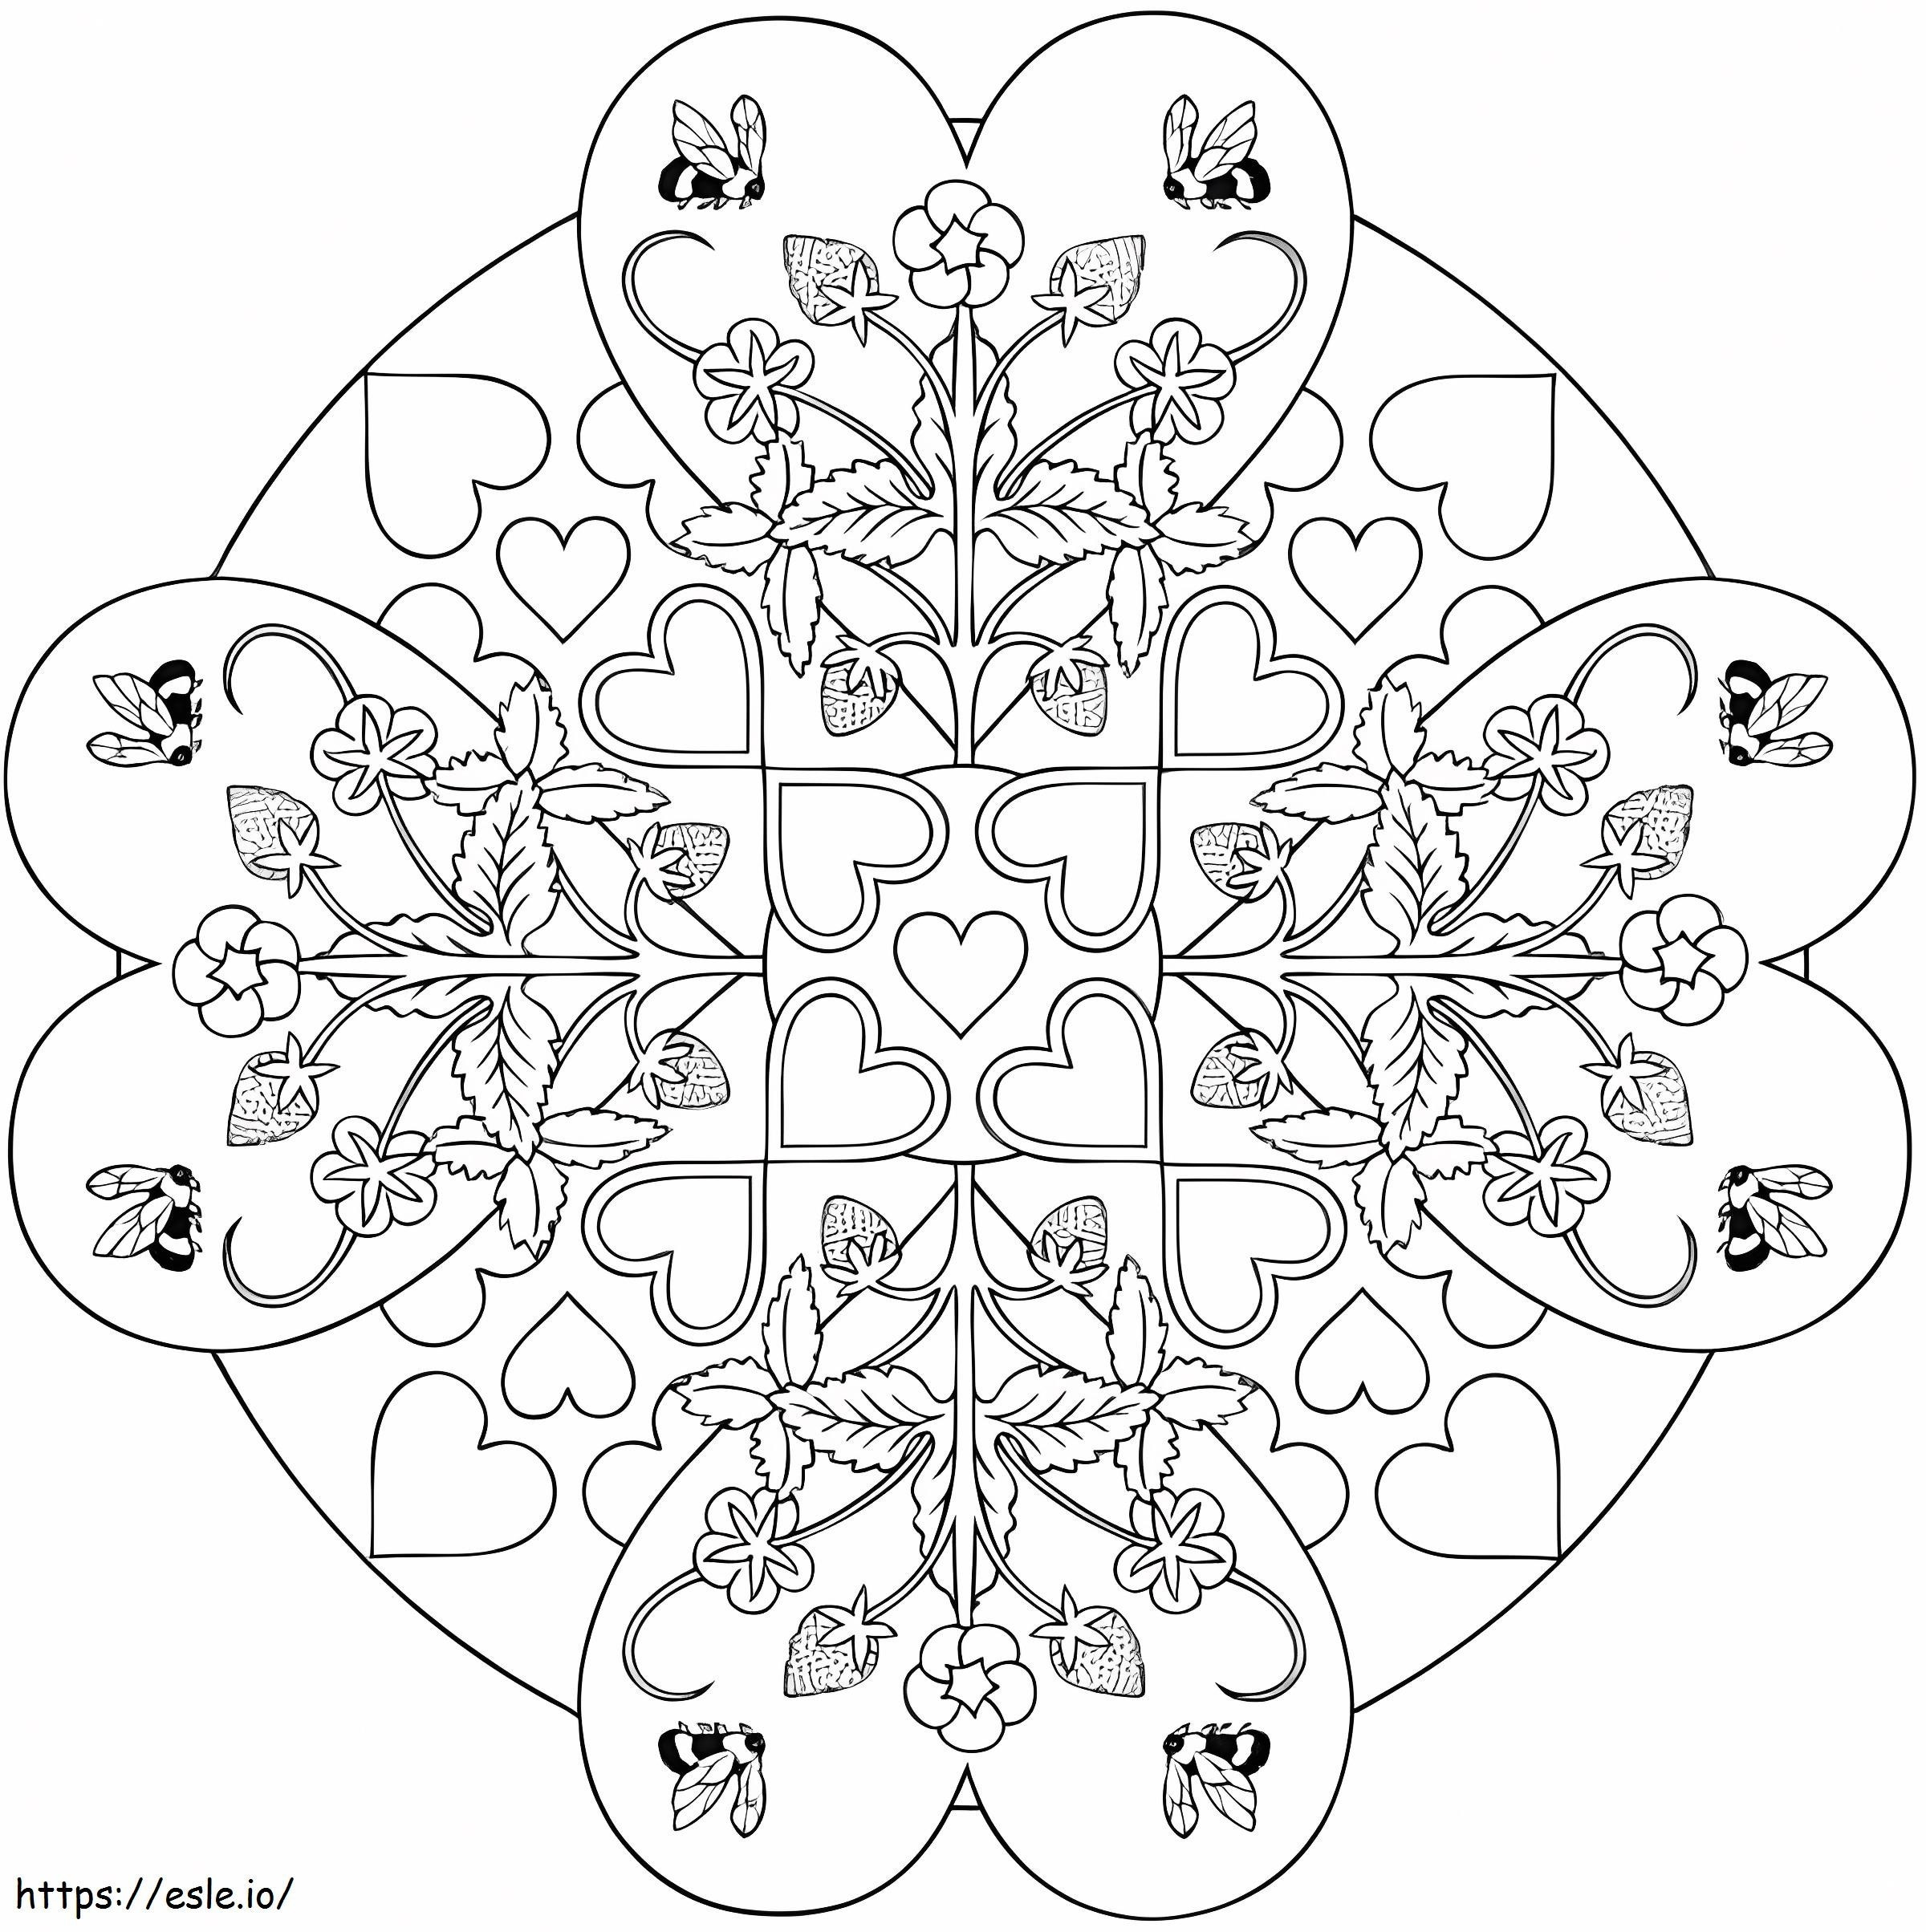 Desenho Para Colorir Mandala - Imagens Grátis Para Imprimir - img